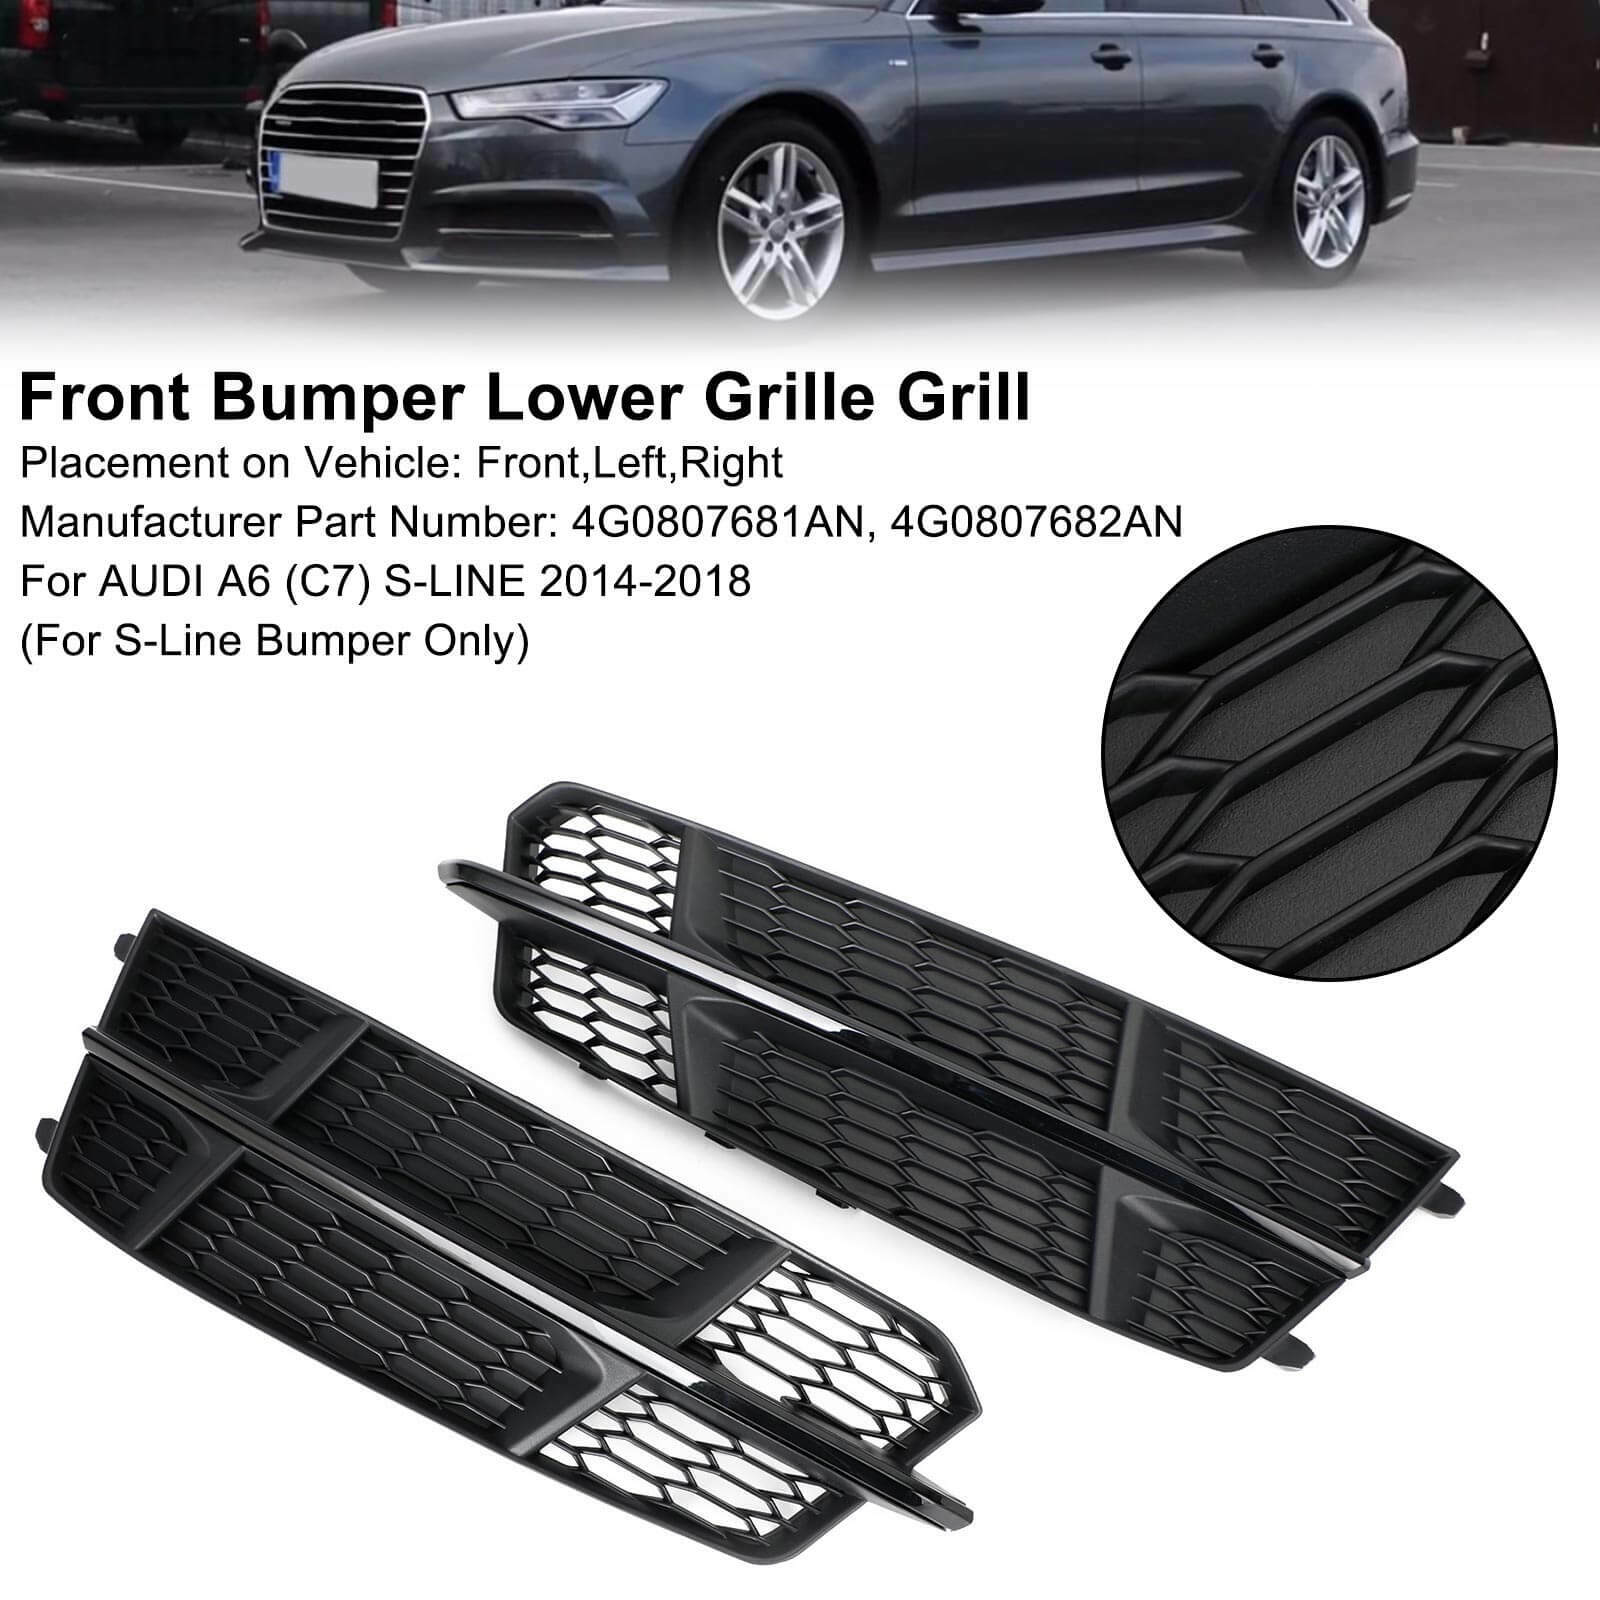 Front Bumper Lower Grille Grill Fit Audi A6 C7 S-Line 2016-2018 Matt Black